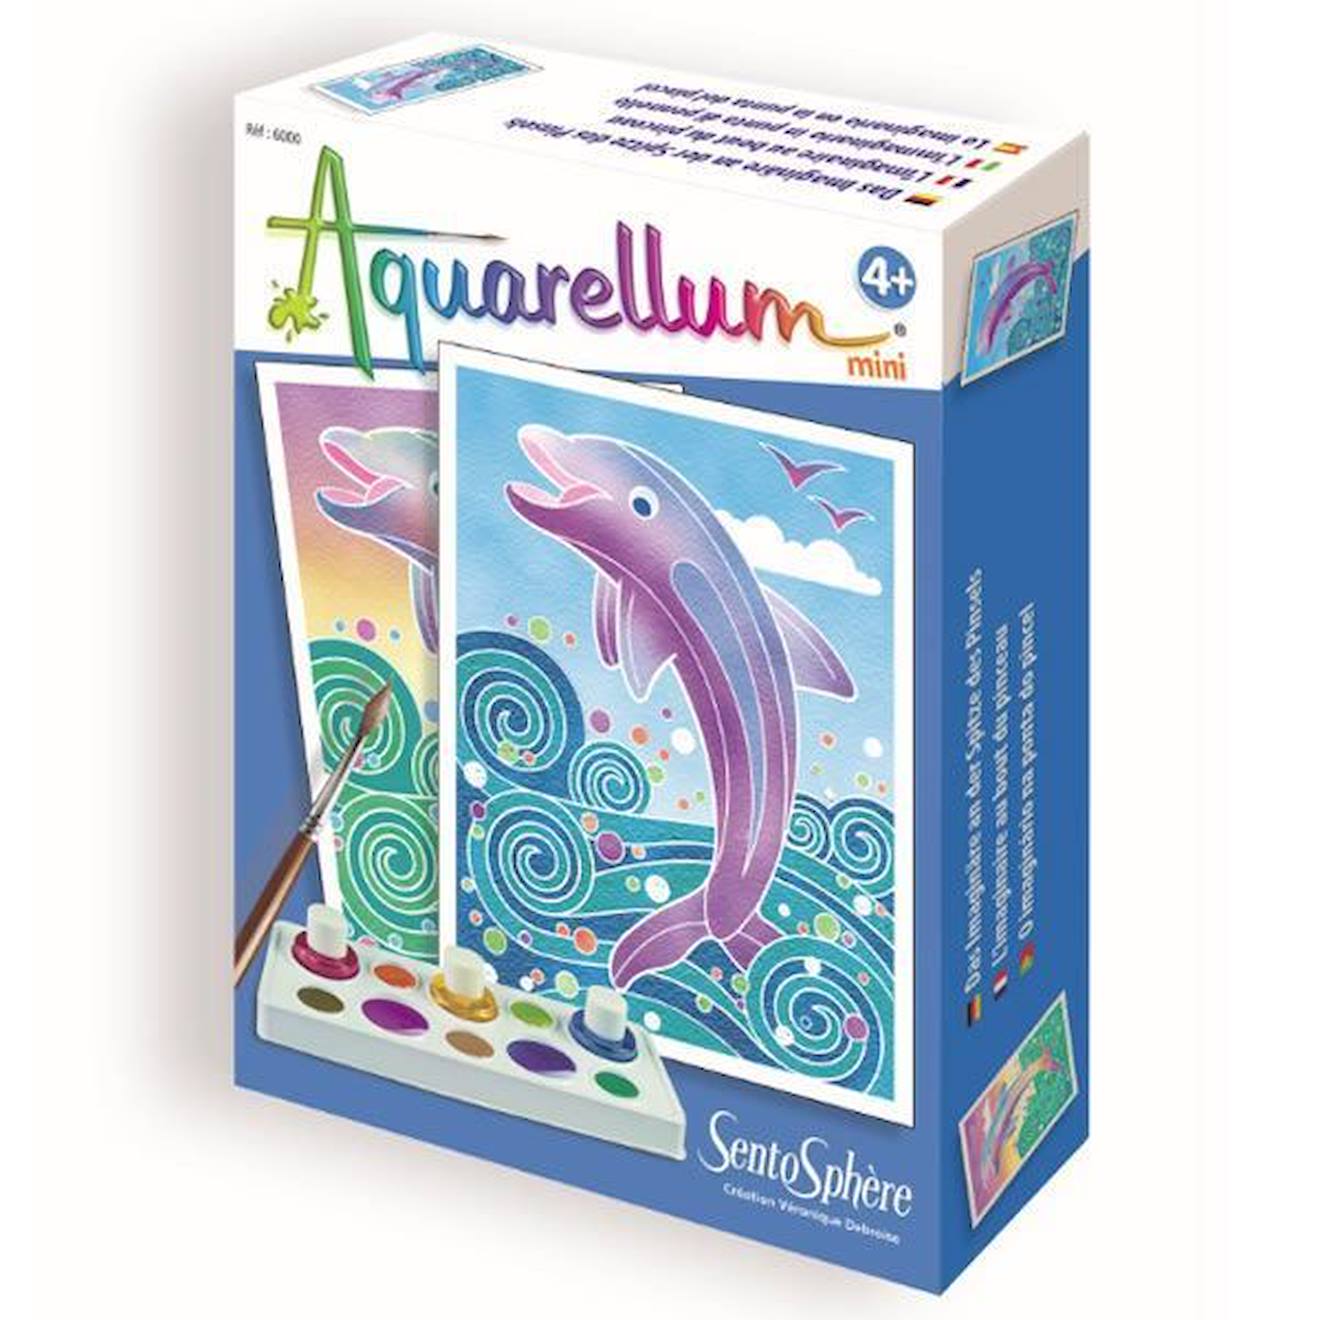 Coffret Aquarellum Mini Dauphin Sentosphere - Jouet Créatif Mixte Pour Enfants De 3 Ans Et Plus Bleu